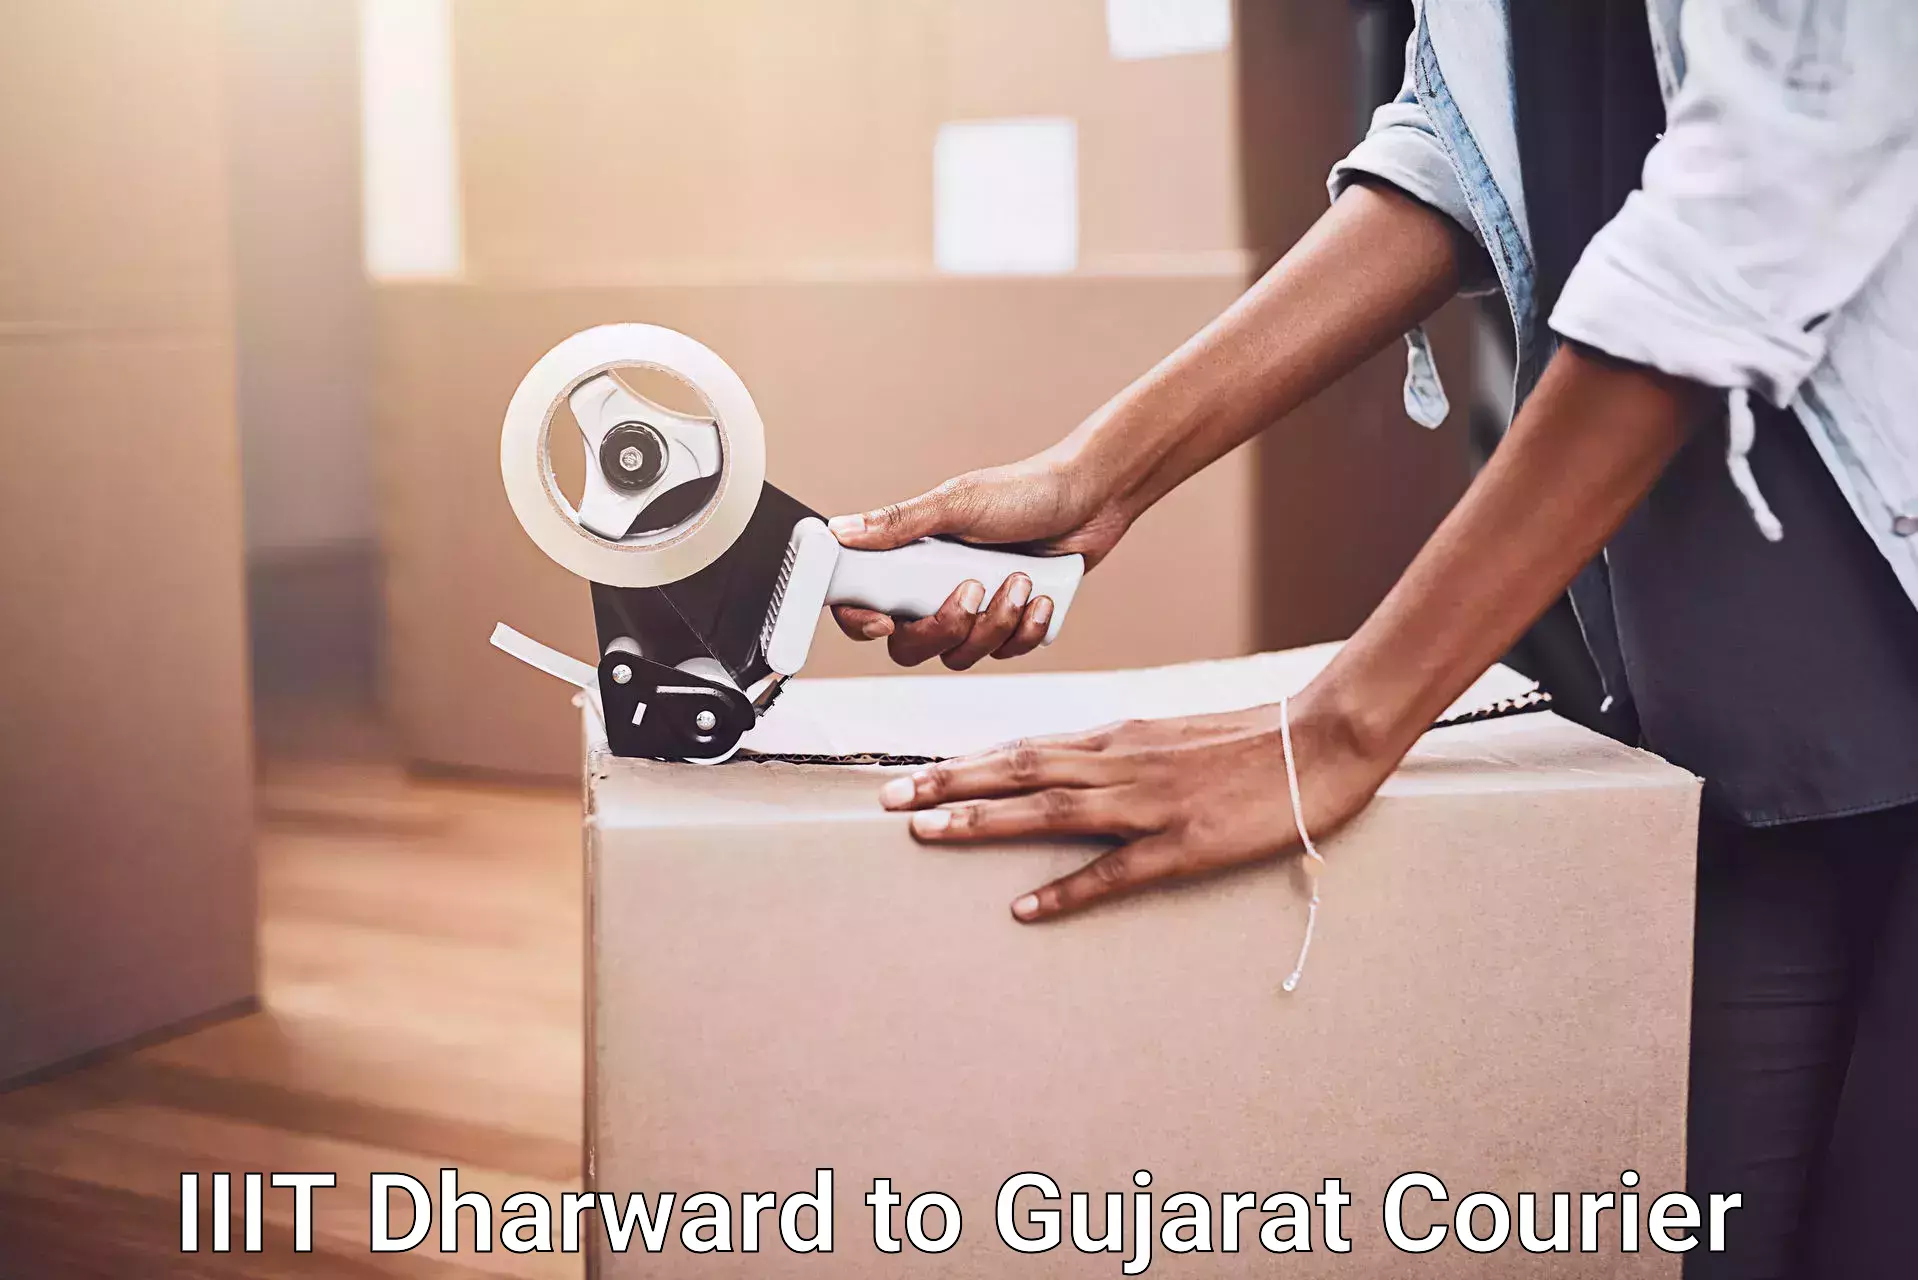 Efficient moving company IIIT Dharward to Patan Gujarat